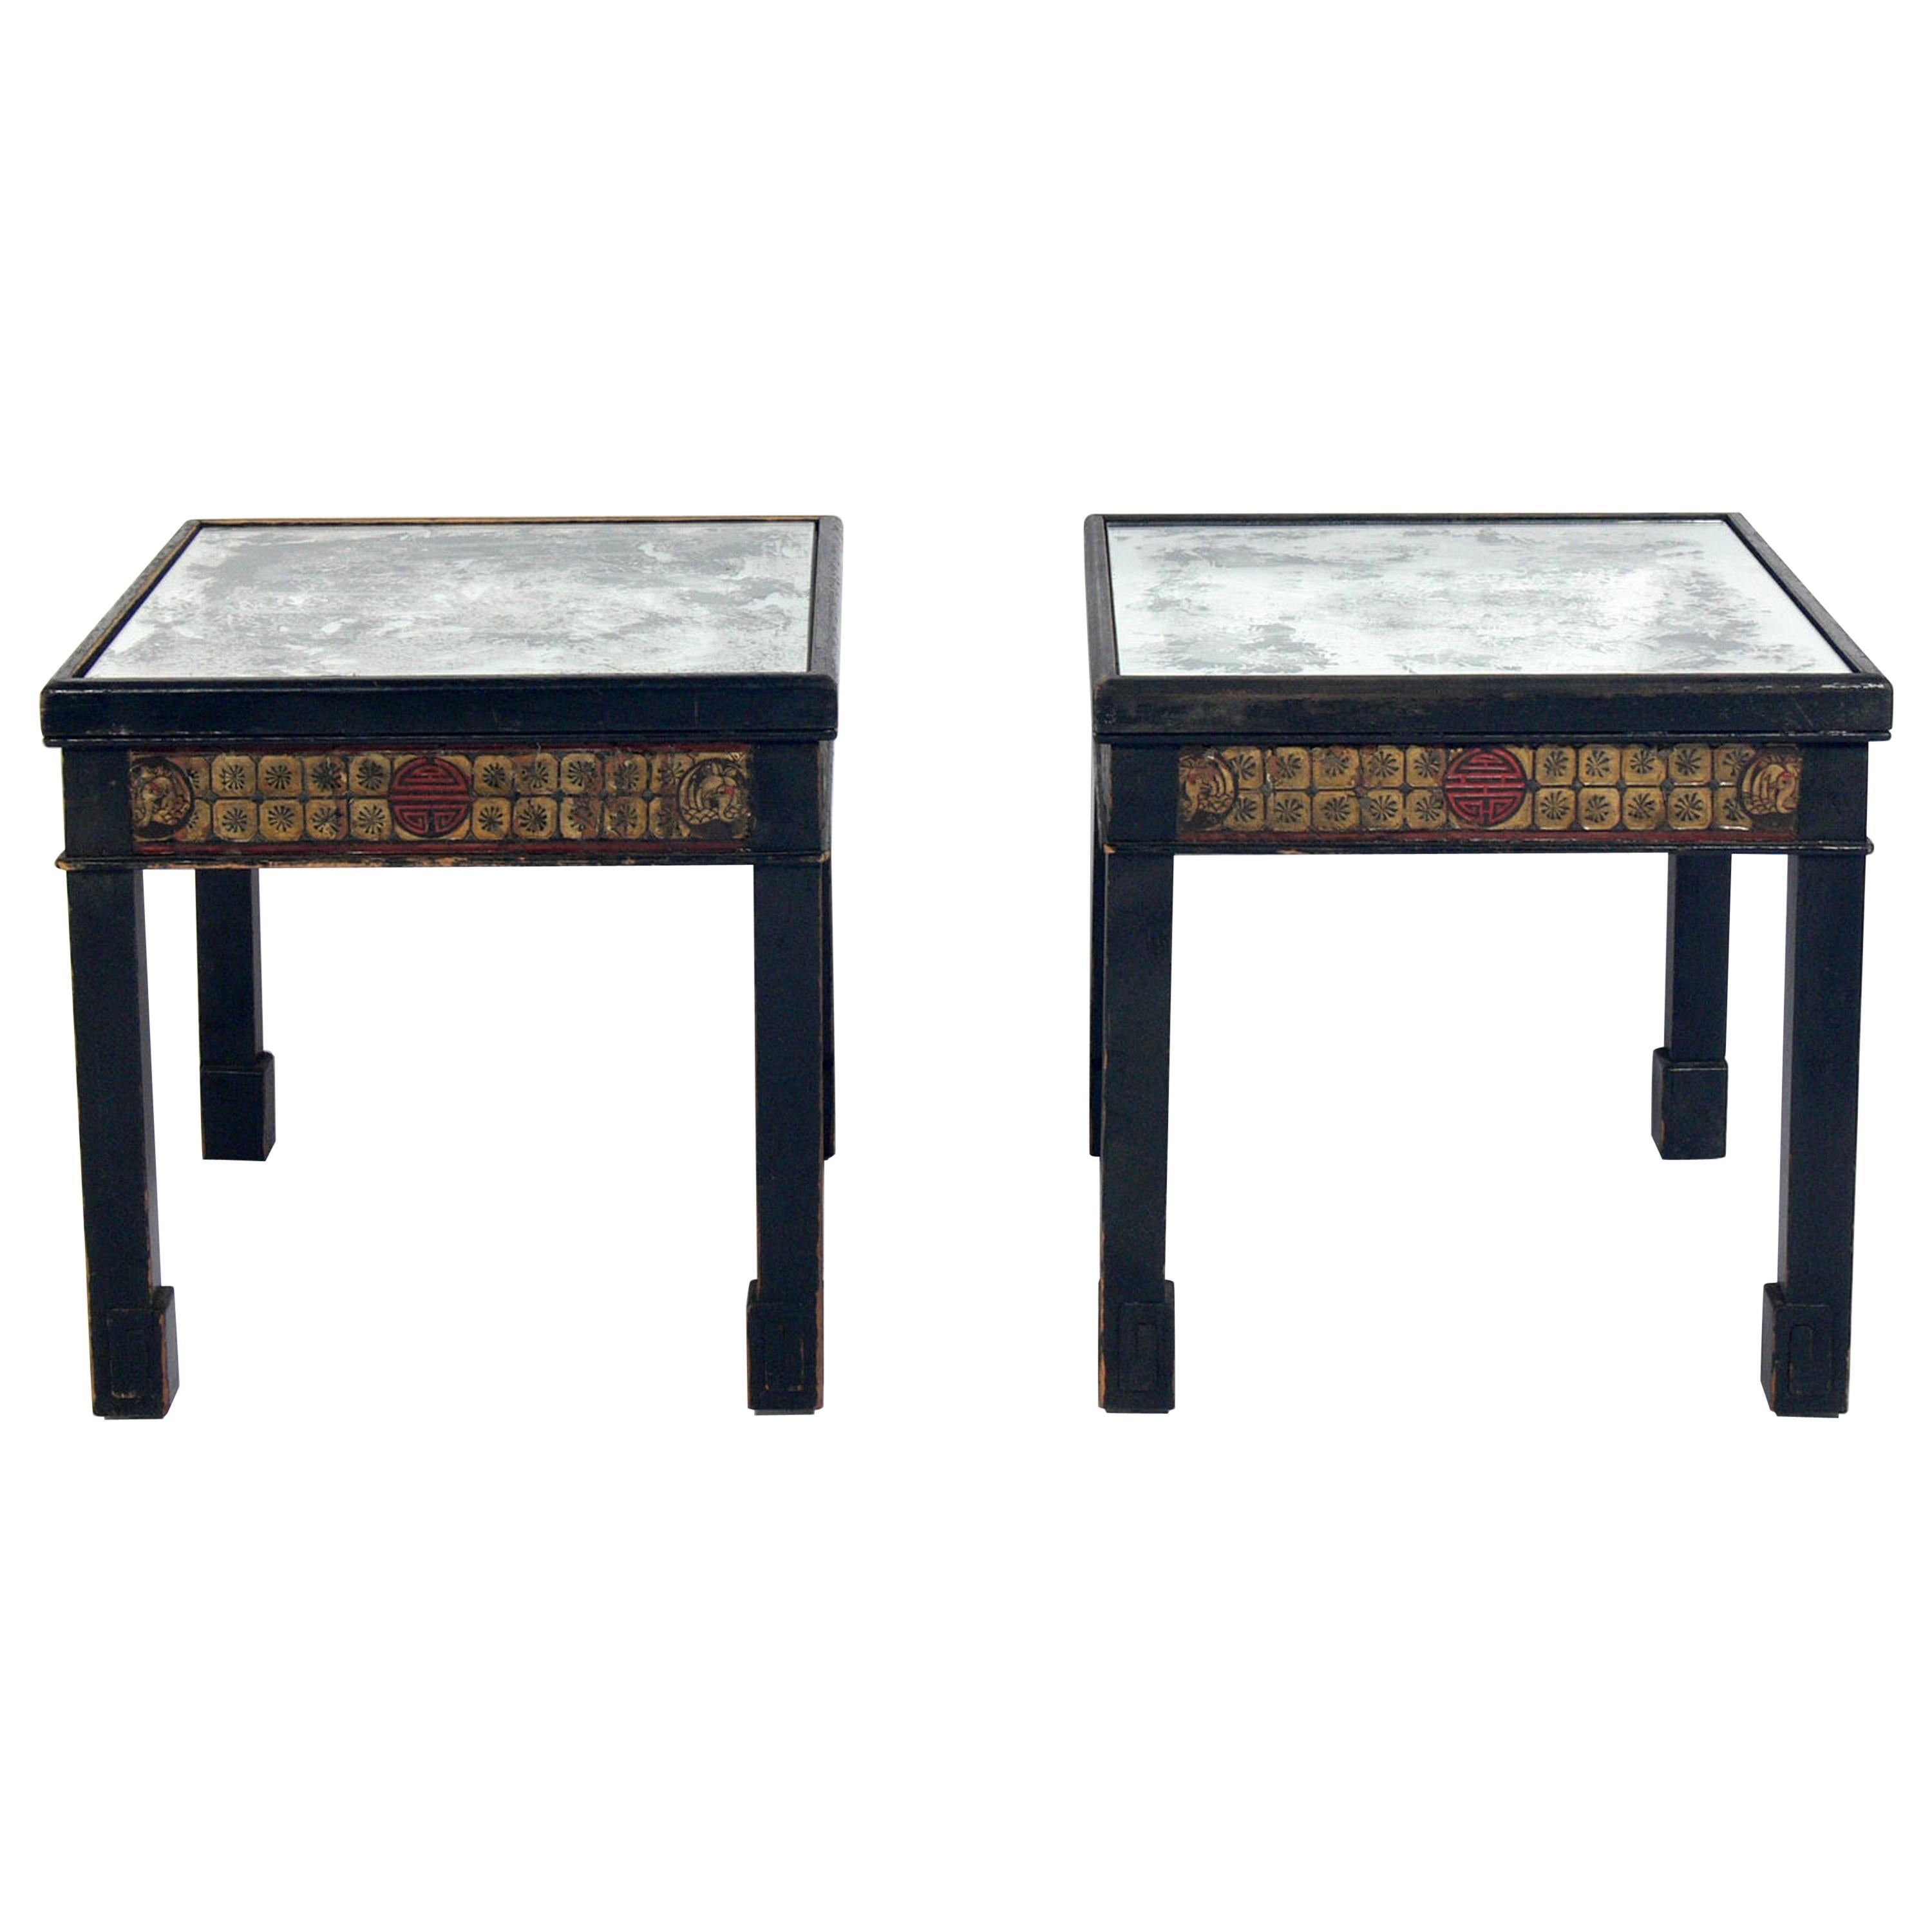 Tables d'extrémité Chinoiserie Antiquité à dessus en miroir